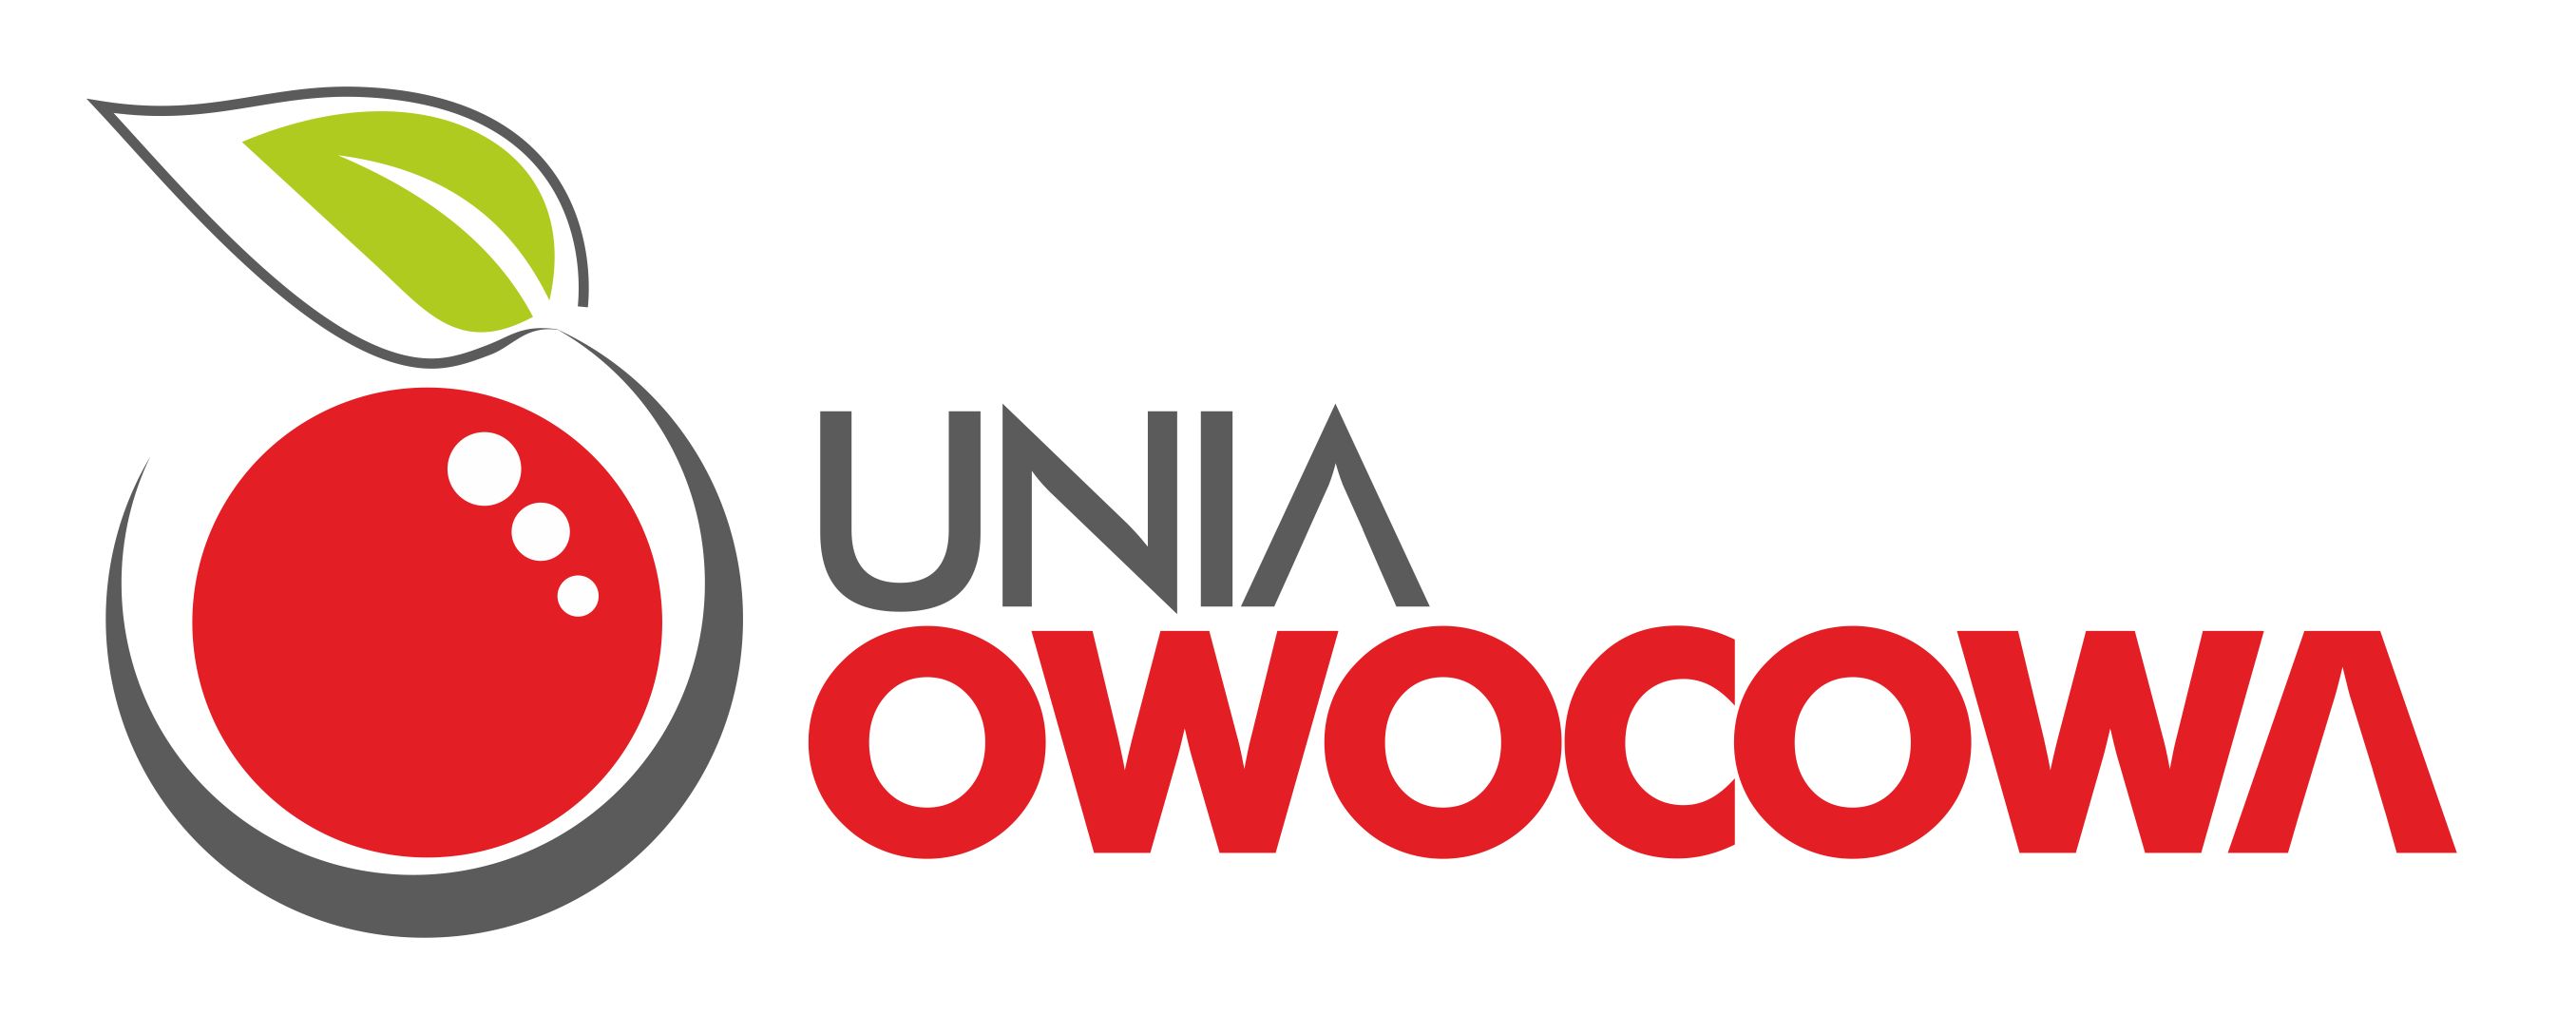 Unia owocowa logo